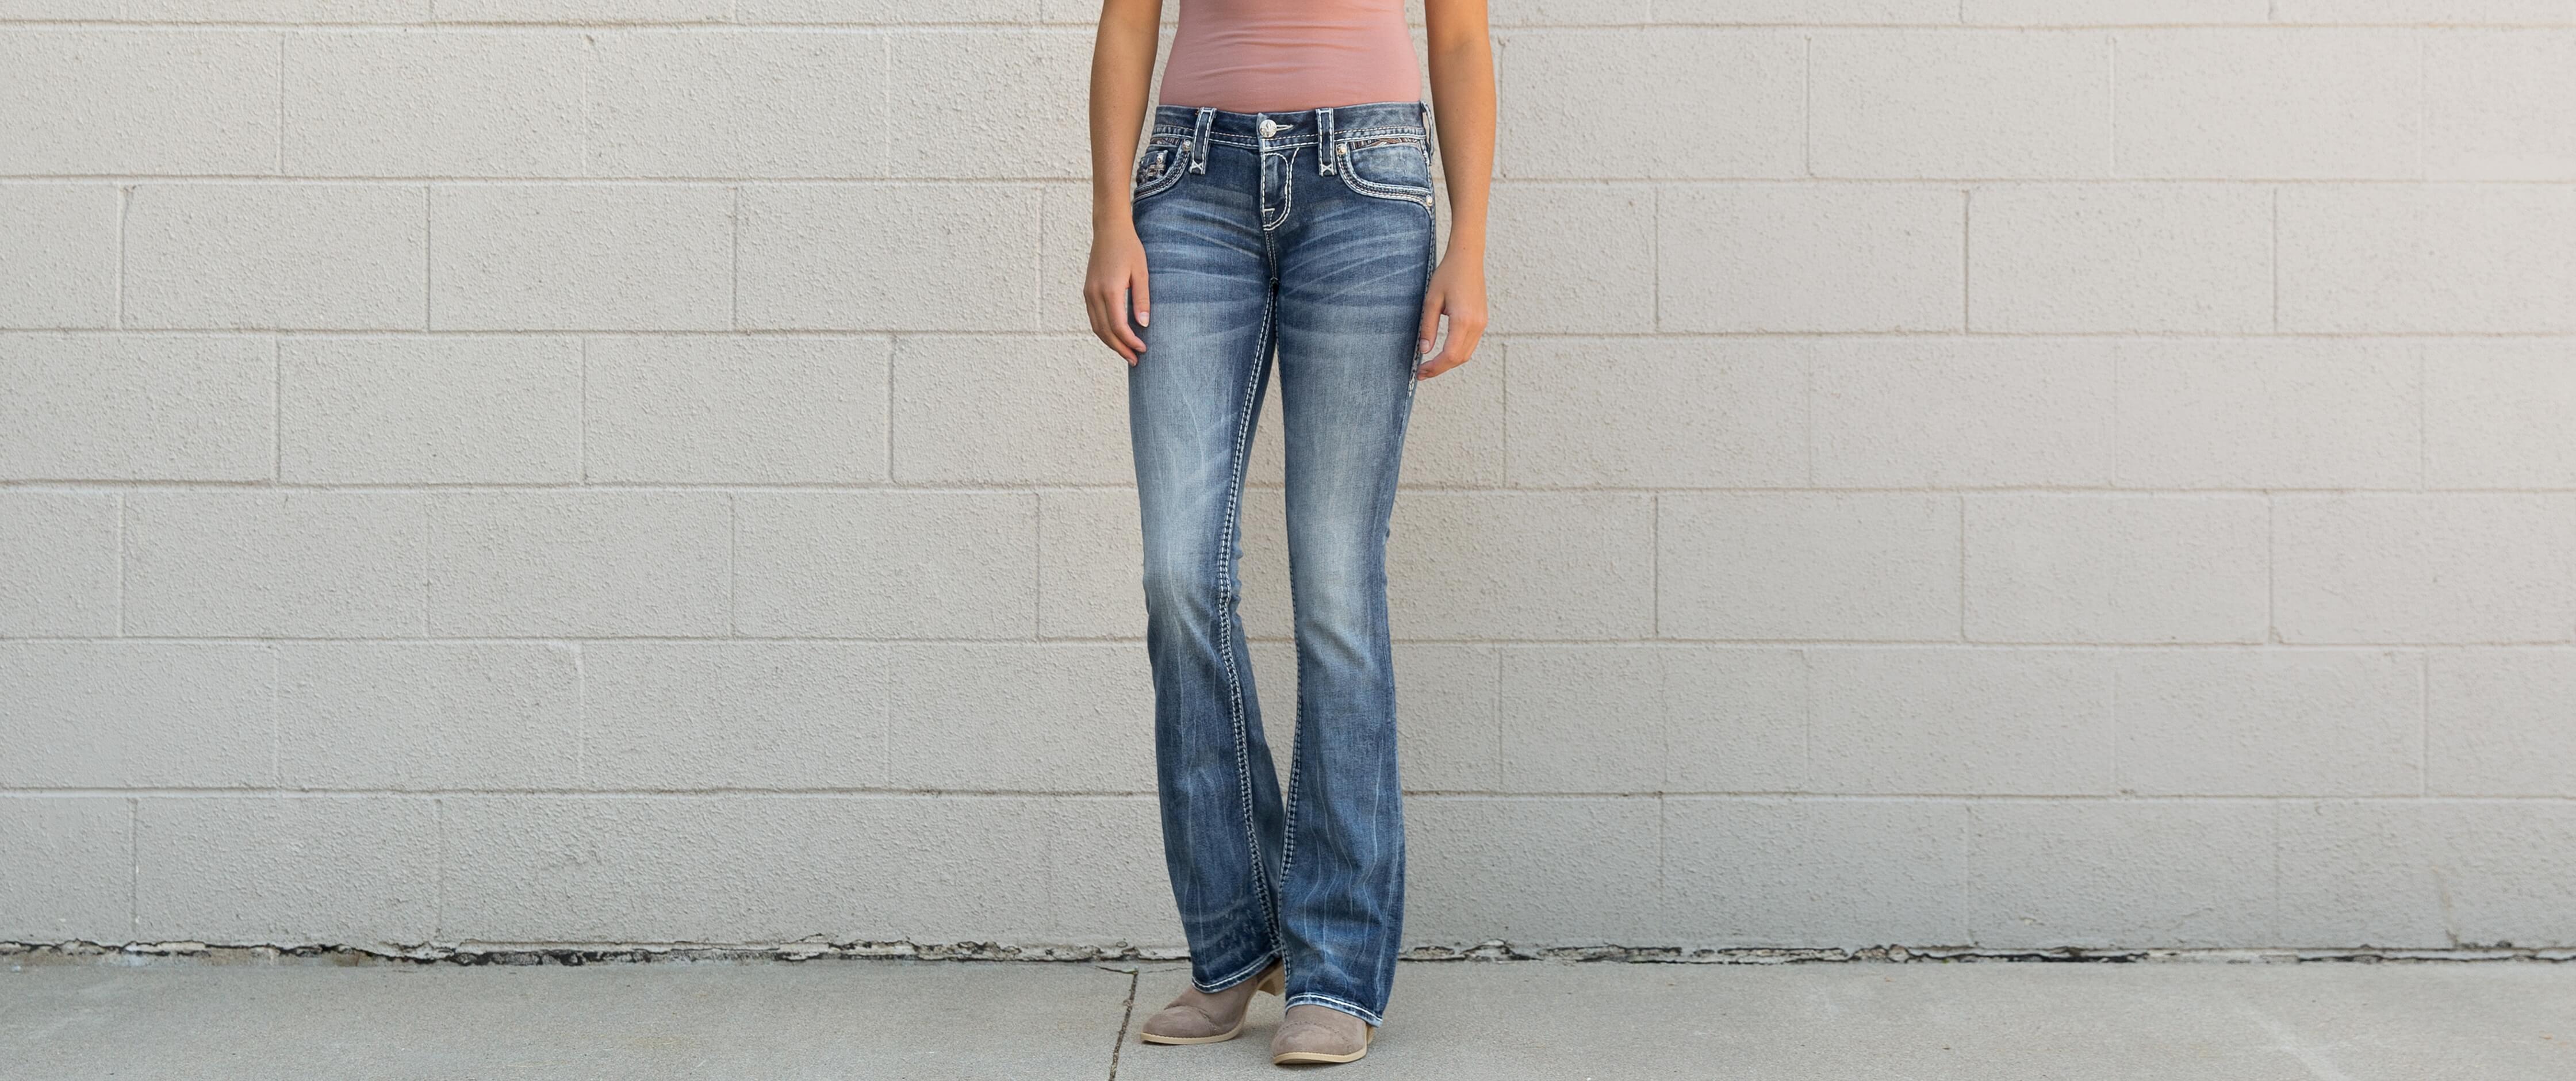 buckle jeans women's bootcut